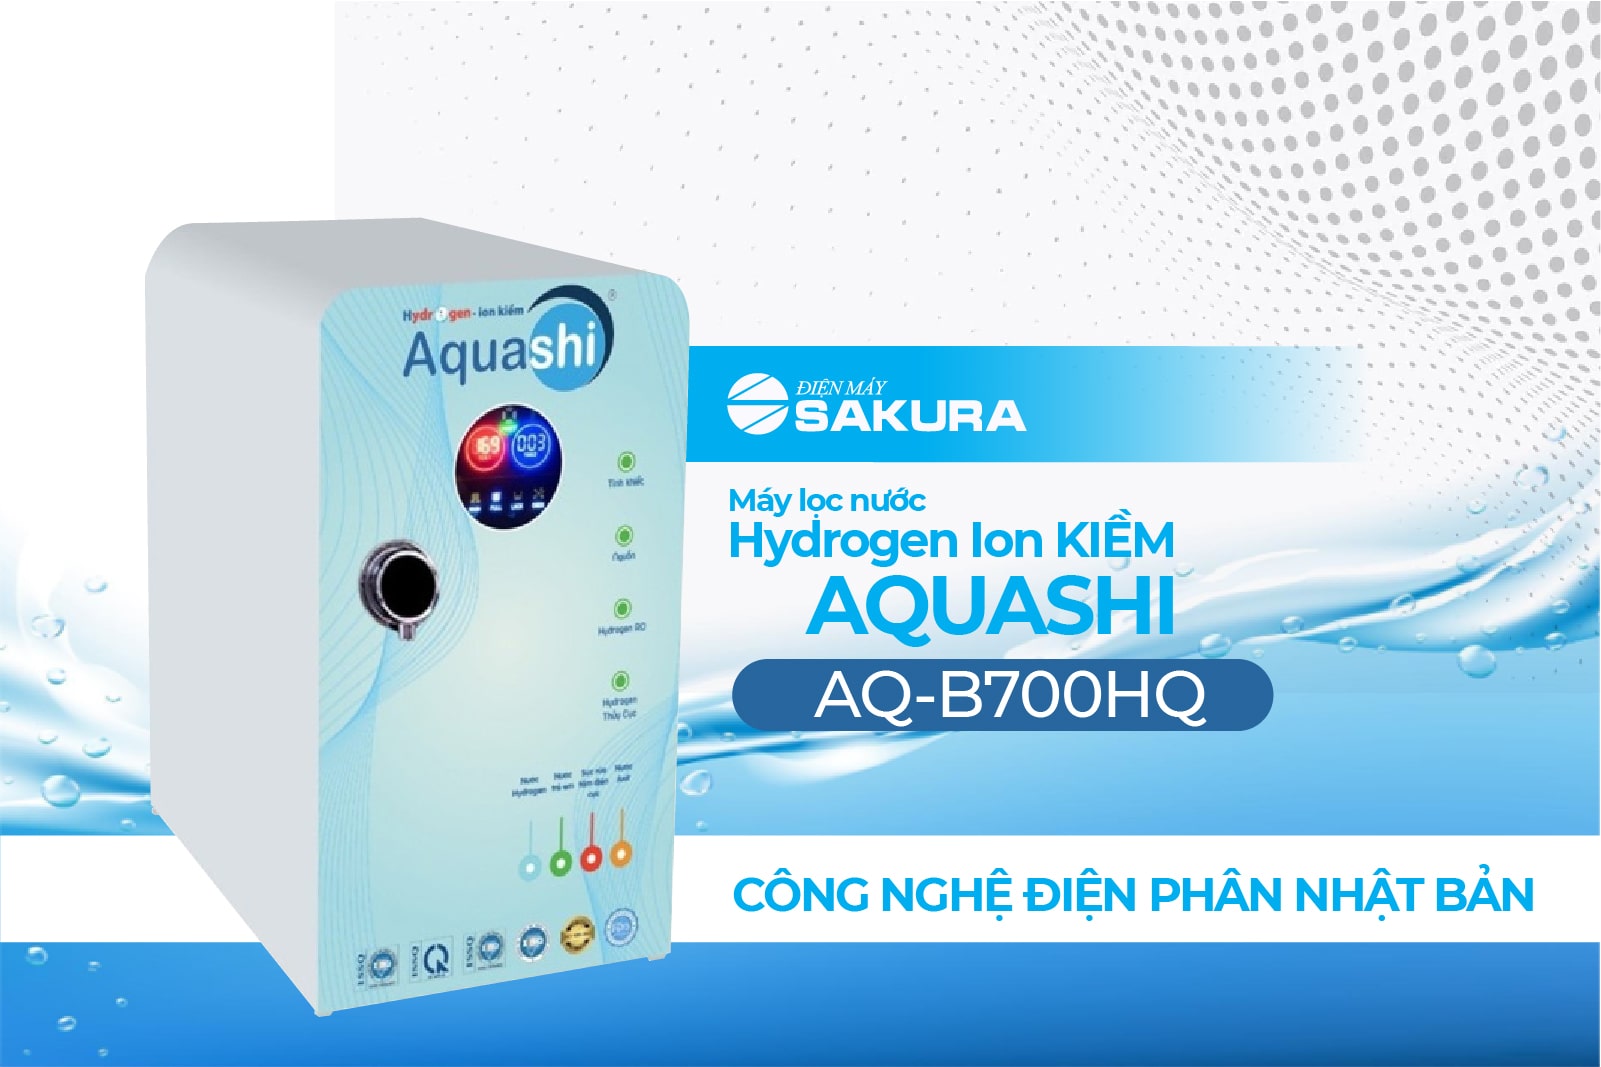 Máy lọc nước Hydrogen ion kiềm Aquashi AQ-B700HQ